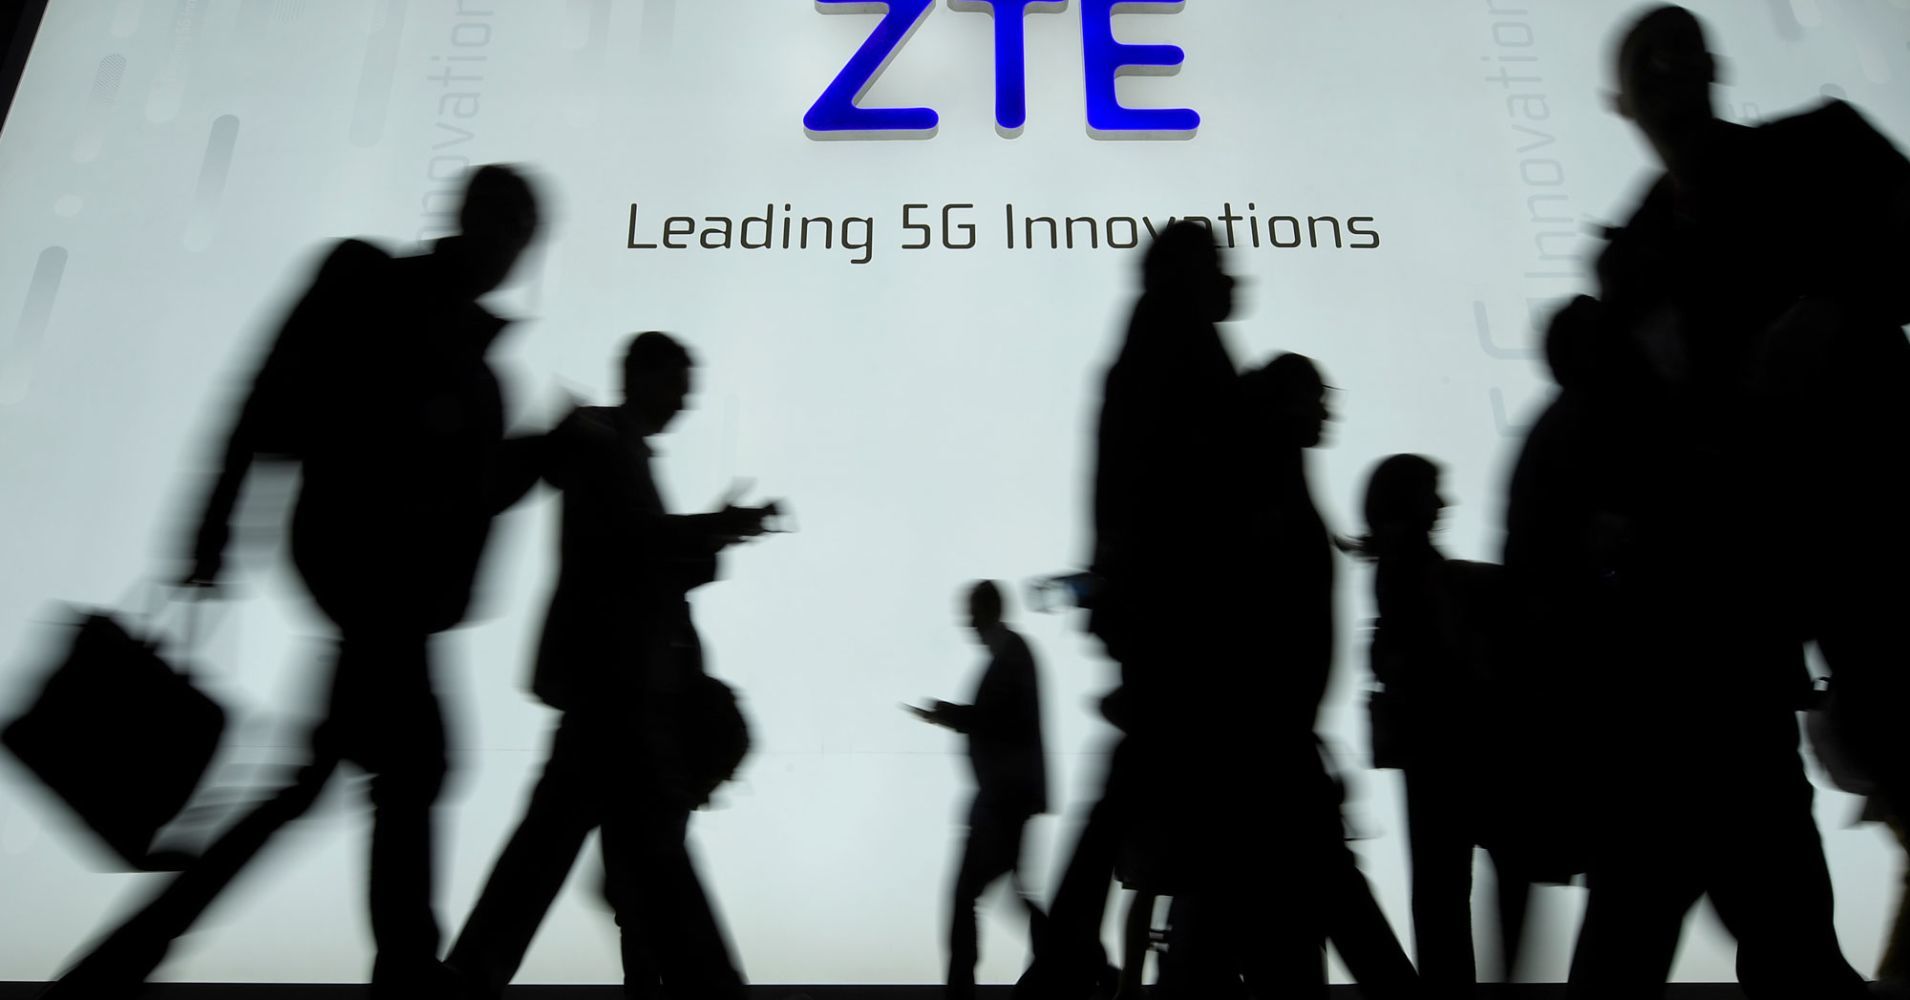 Lệnh cấm ZTE khiến nhiều công ty viễn thông xem xét lại chiến lược kinh doanh